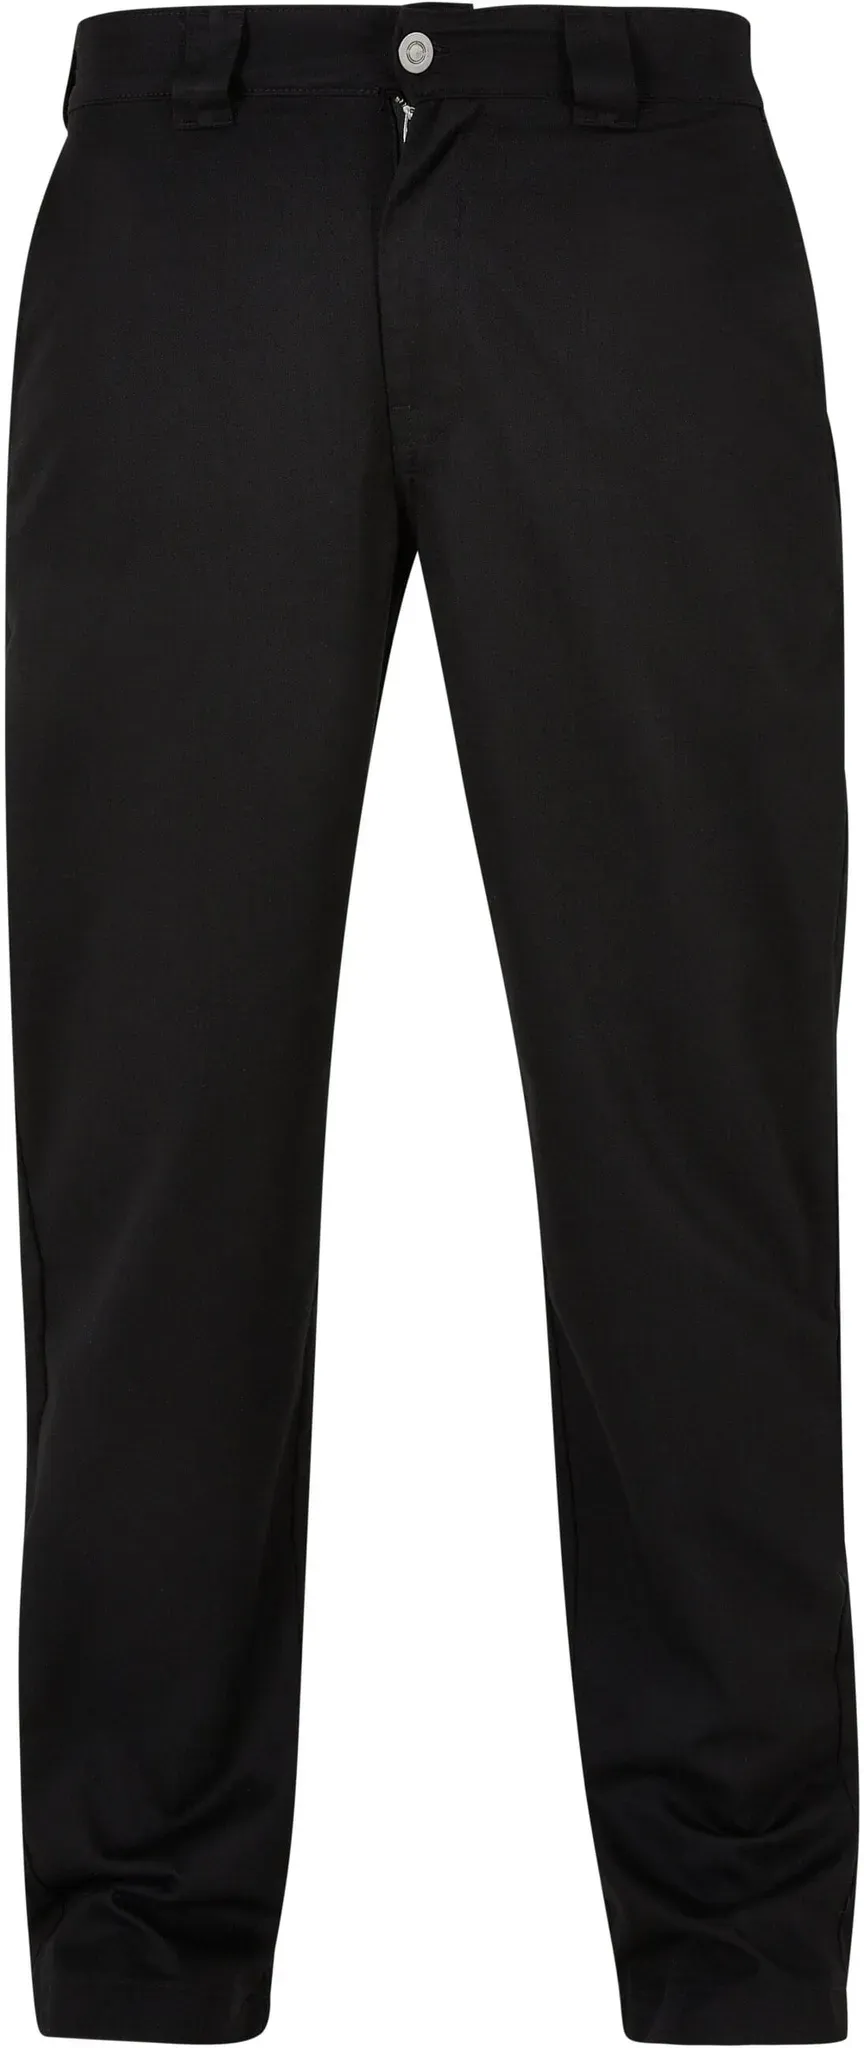 Stoffhose URBAN CLASSICS "Urban Classics Herren Classic Workwear Pants" Gr. 38, Normalgrößen, schwarz (black) Herren Hosen Stoffhosen